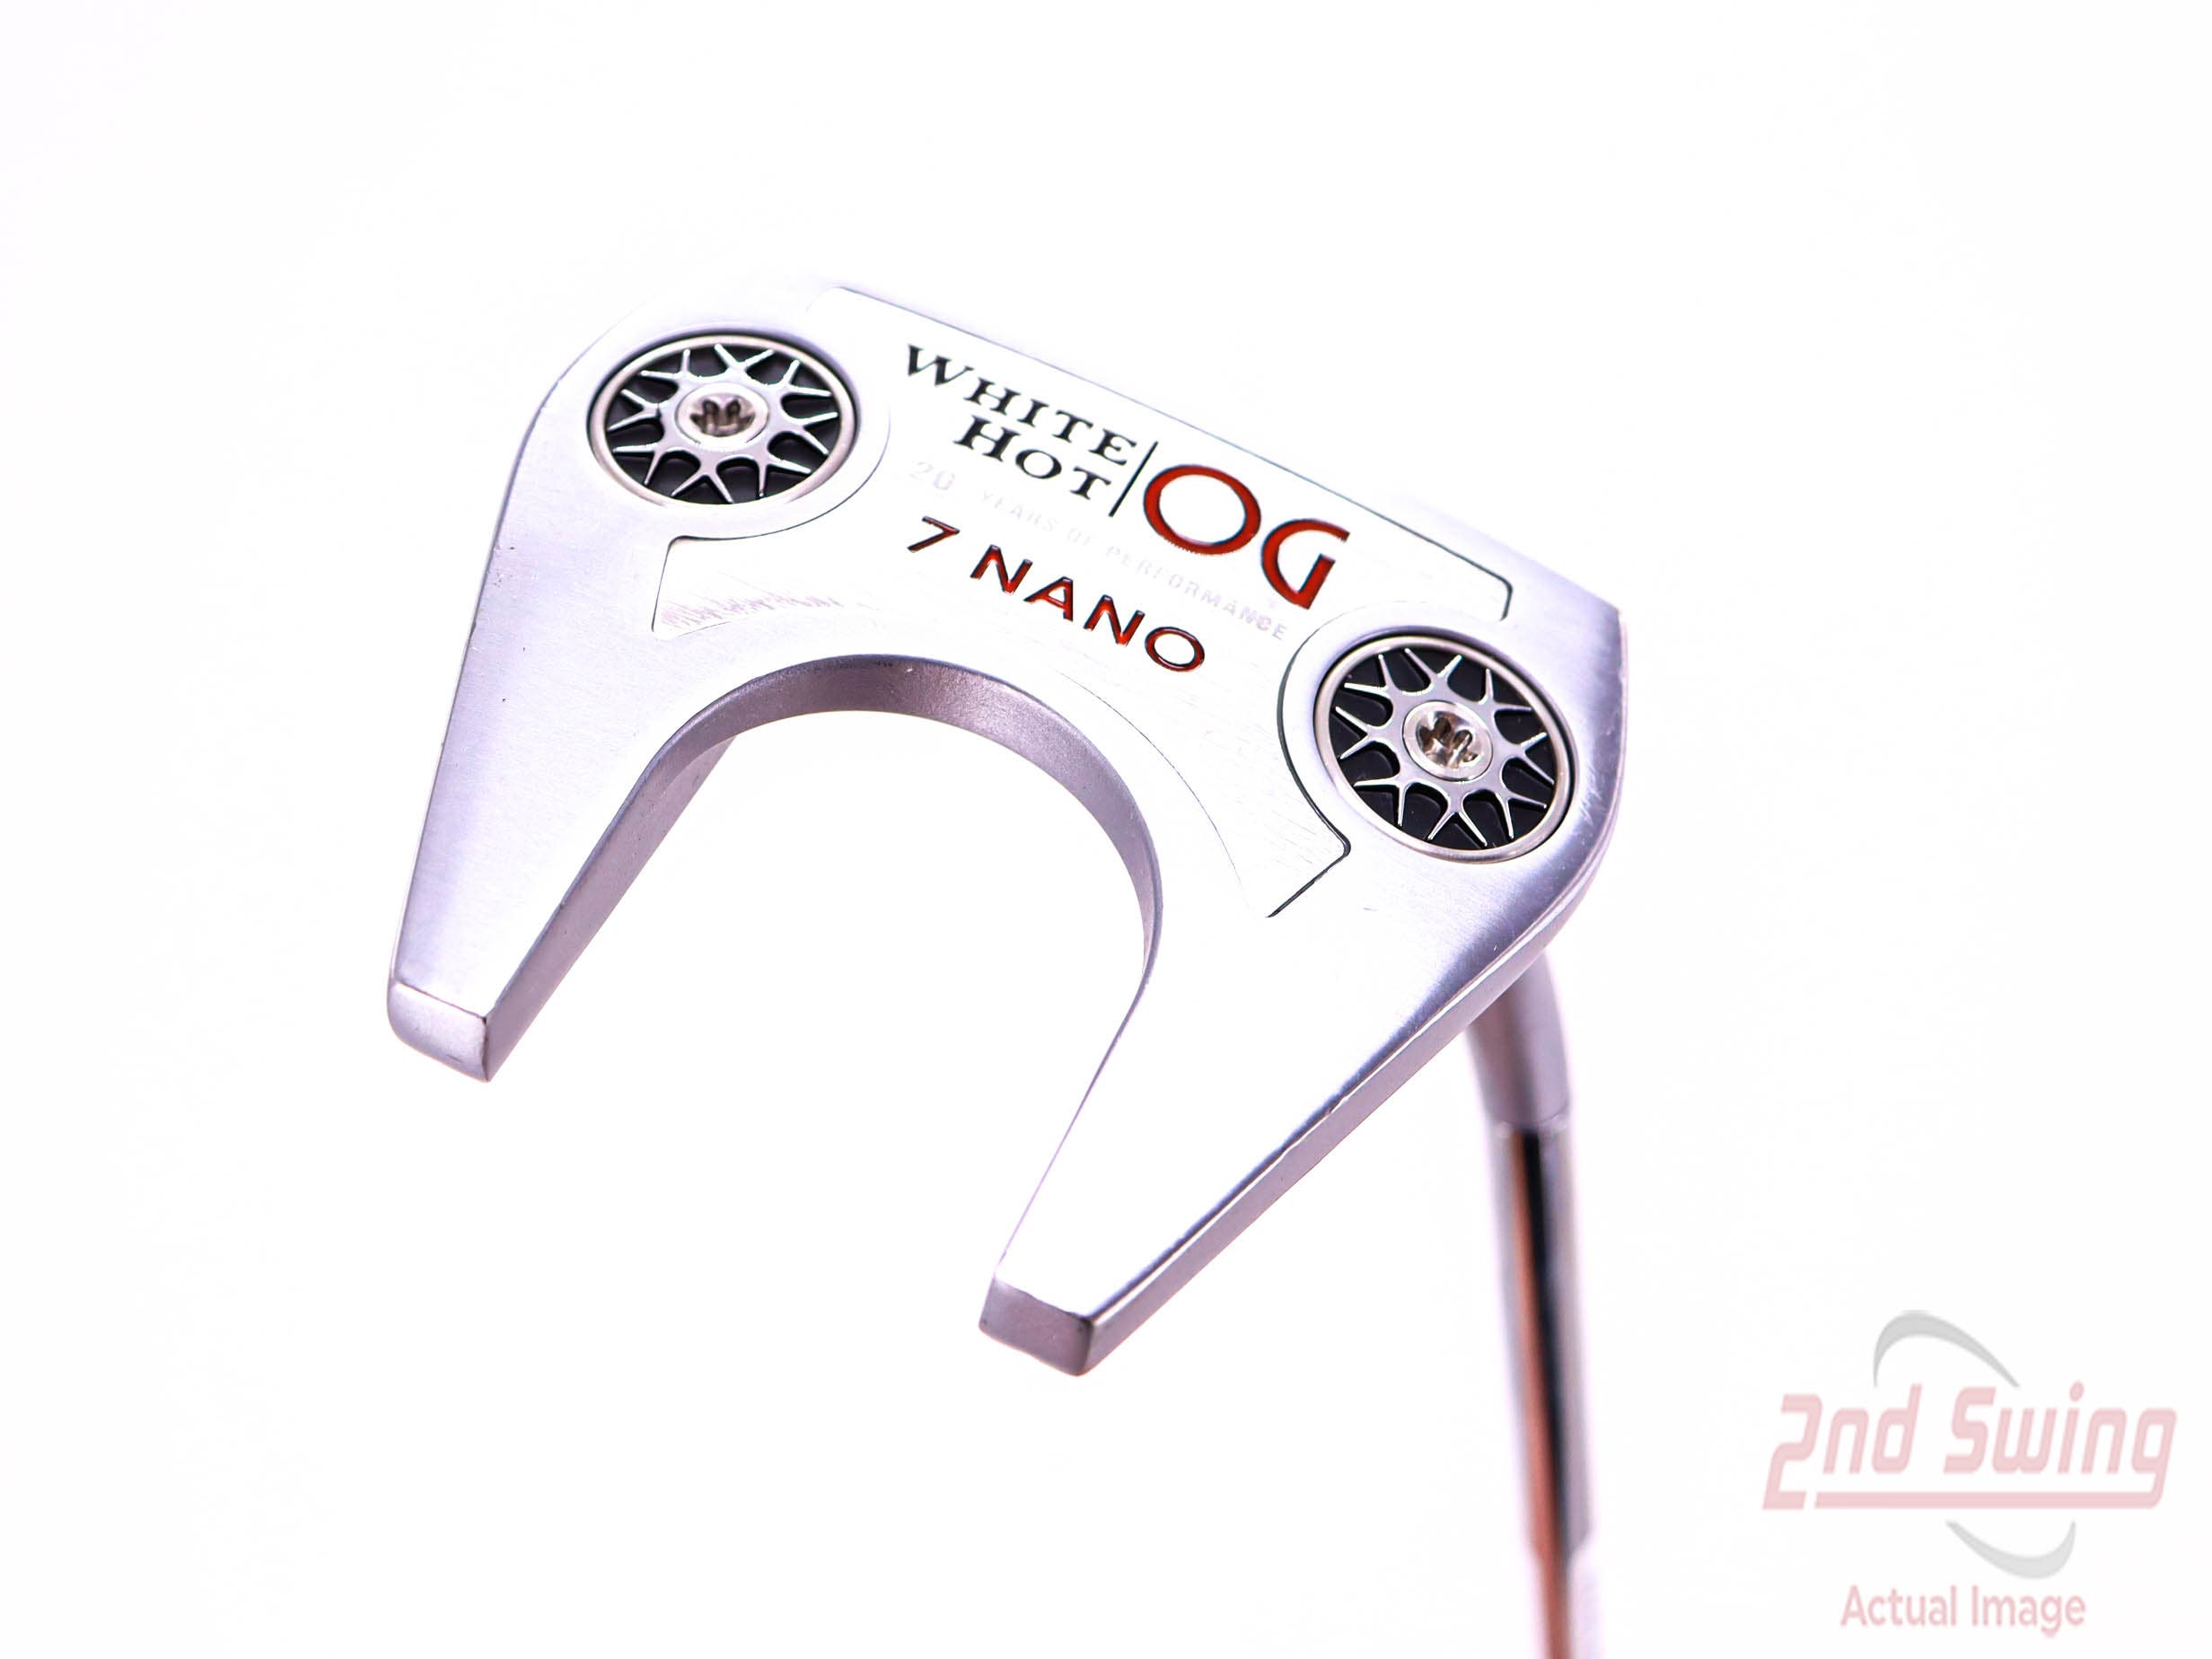 Odyssey White Hot OG LE 7 Nano Putter (D-42330603191) | 2nd Swing Golf